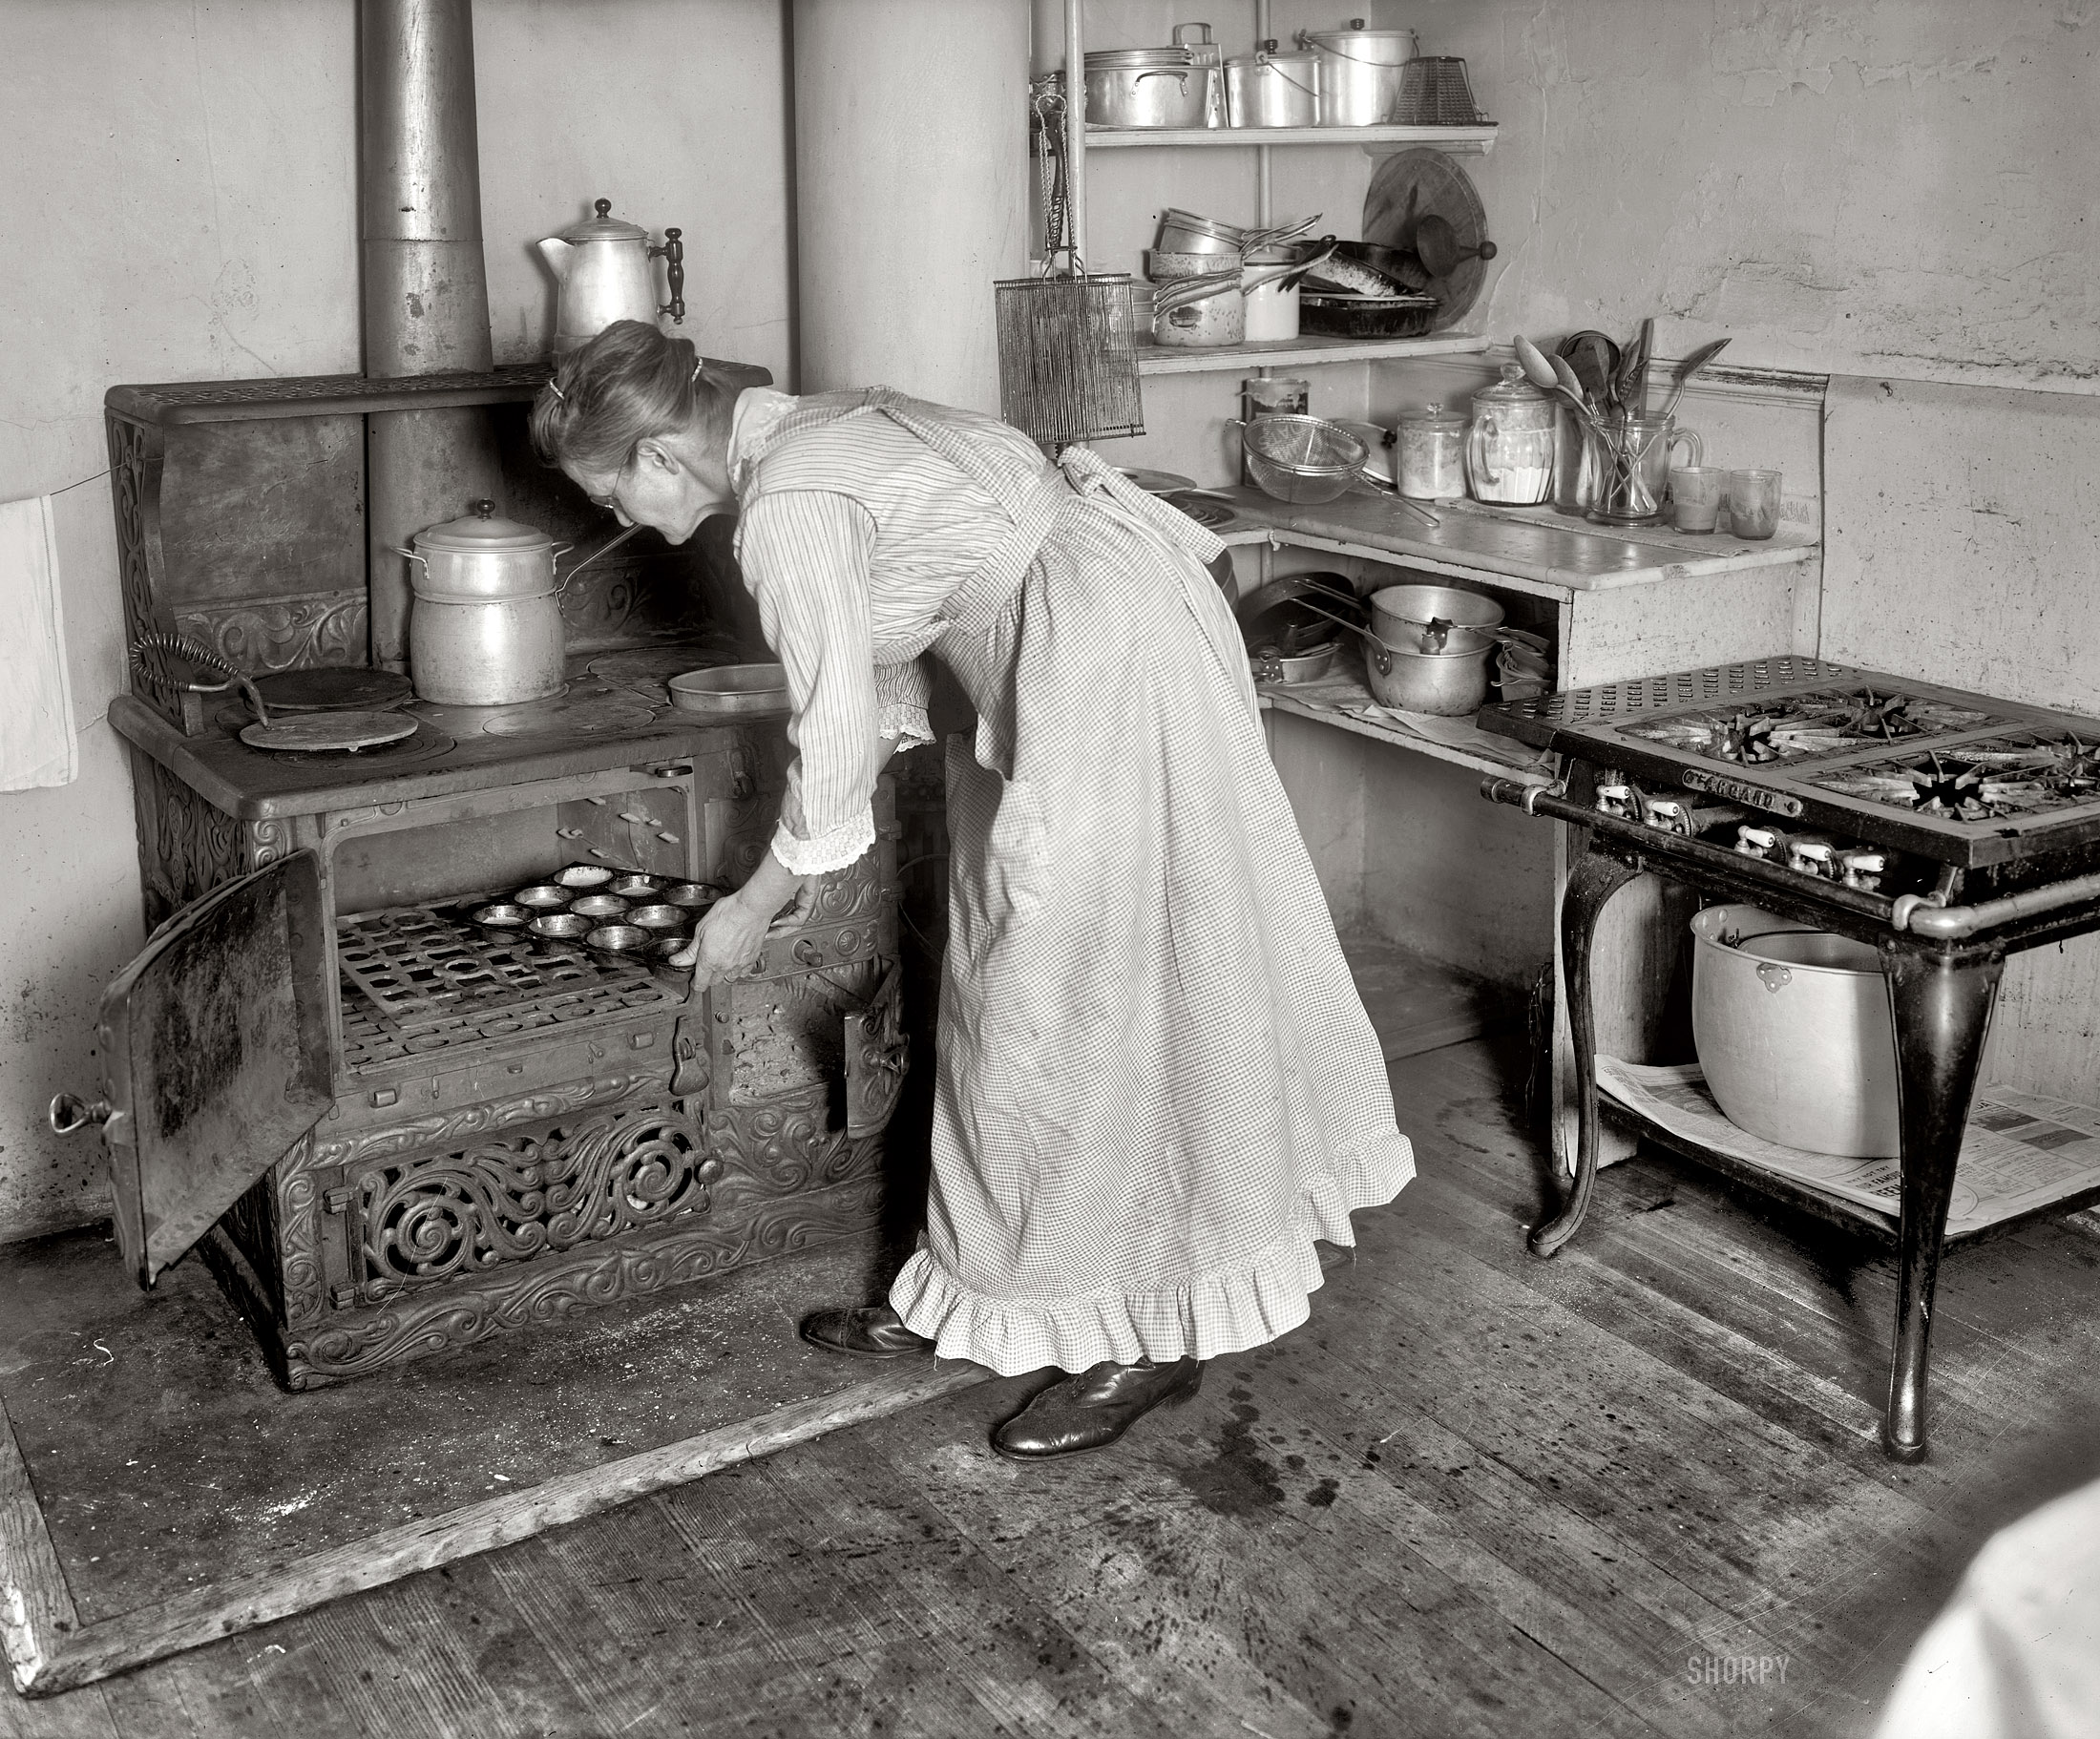 Быт конца 19 века. 11 Июня 1742 года в США изобретена кухонная плита. Старинная кухня. Американский быт в начале двадцатого века. Кухня конца 19 века.